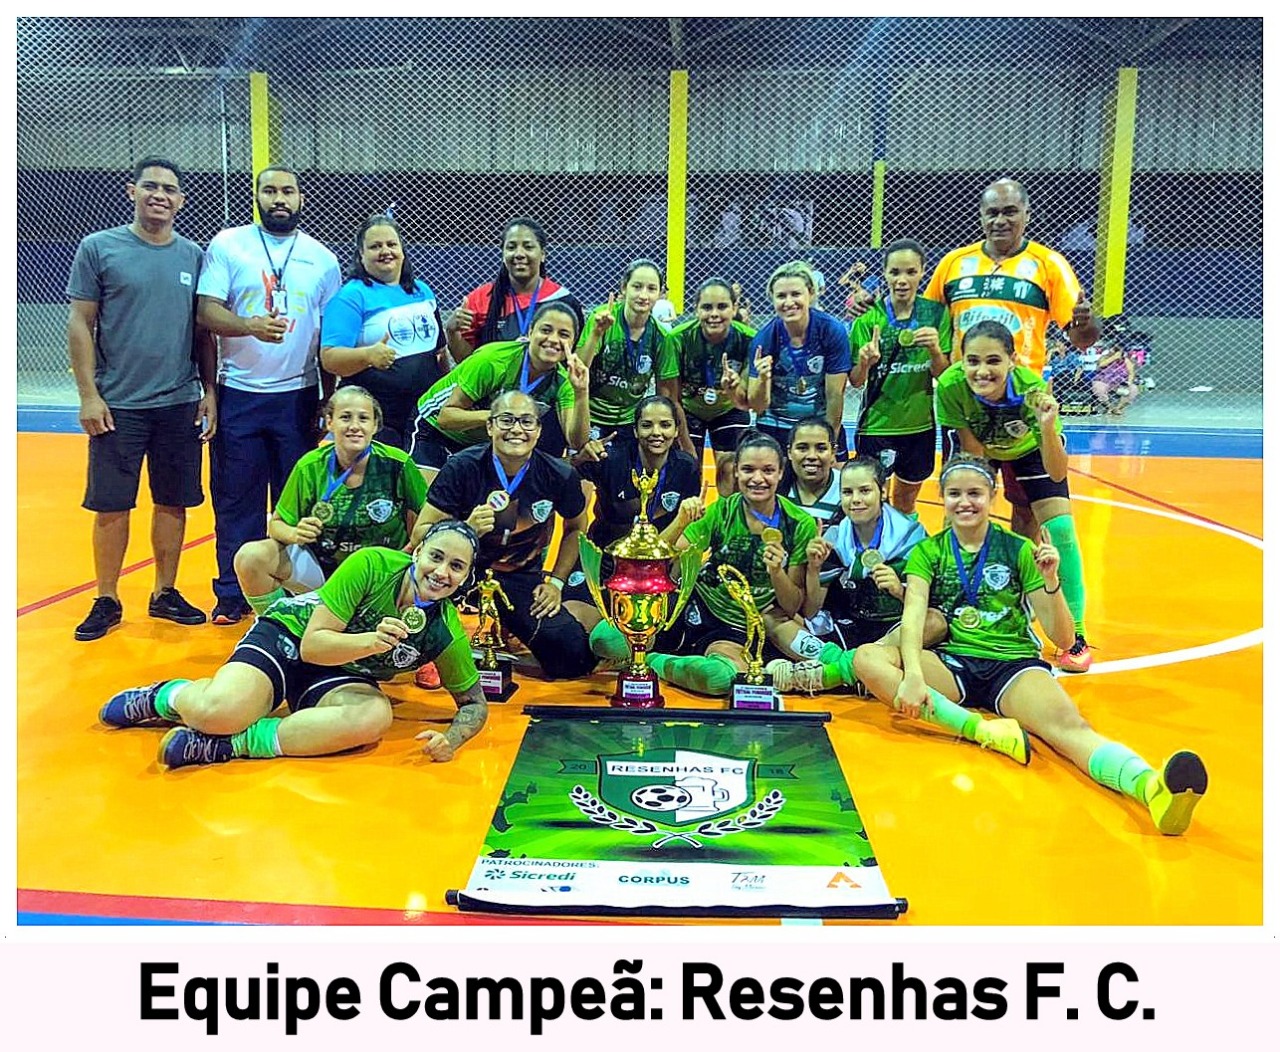 Resenhas FC conquista a 2ª Taça Rio-verdense de Futsal Feminino